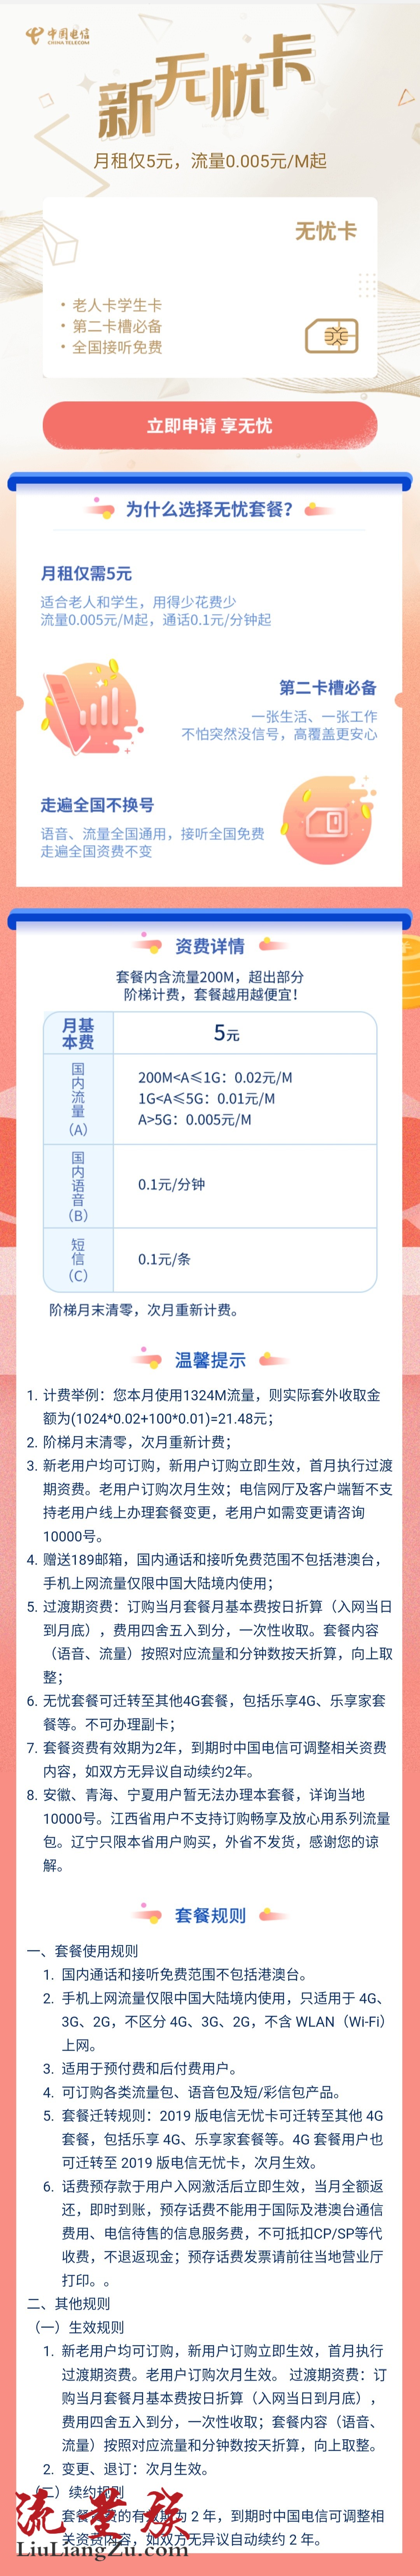 中国电信无忧卡#5元/月:含200m,通话0.1元/分钟,短信